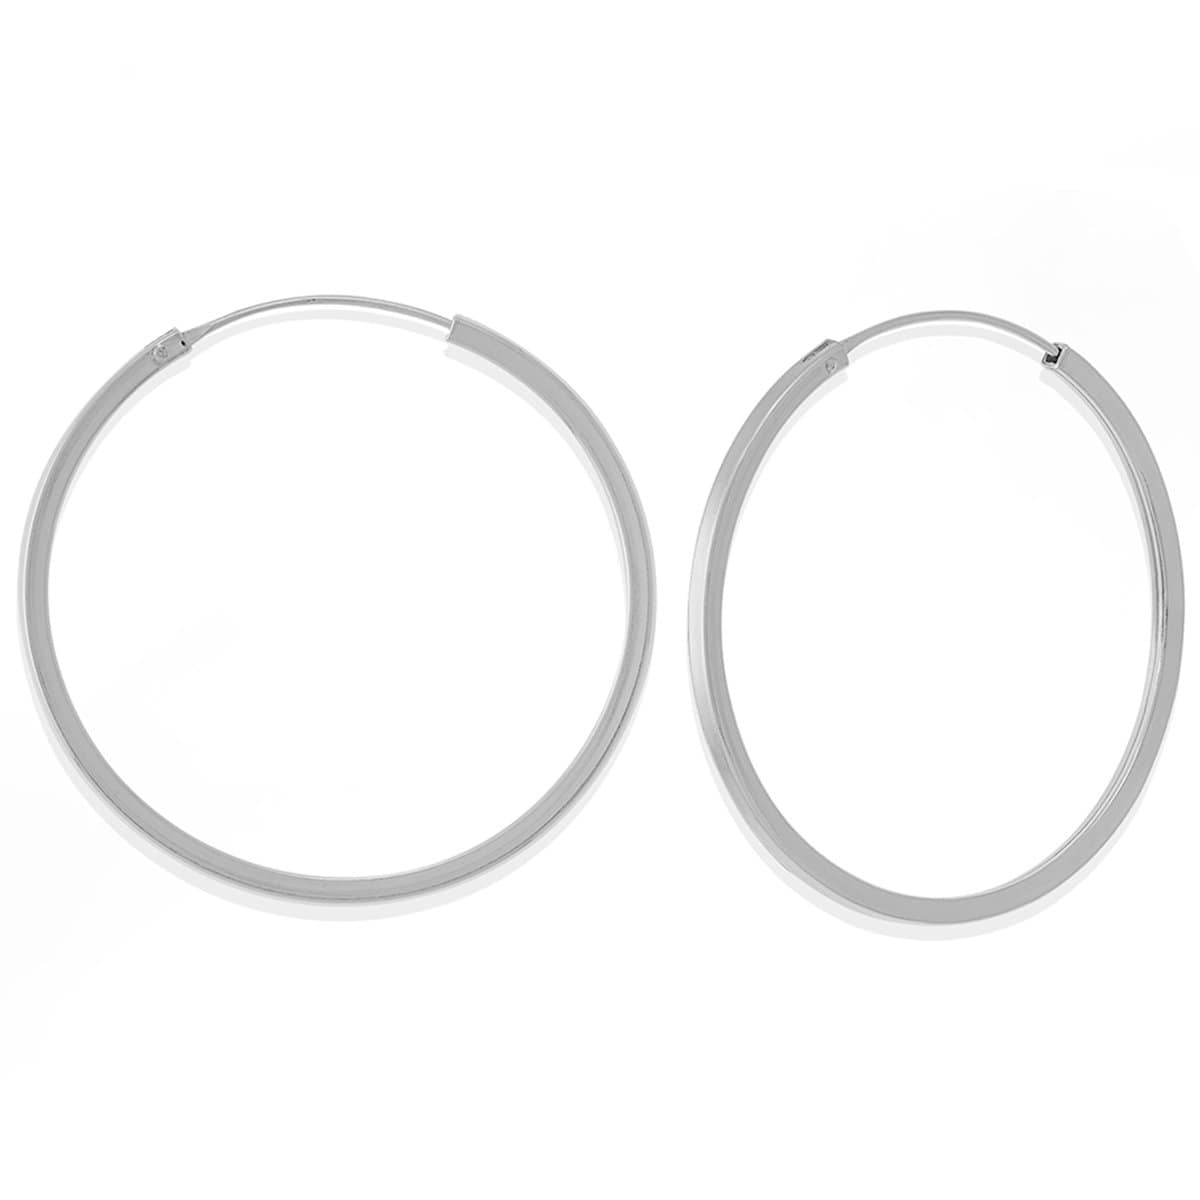 Boma Jewelry Earrings Sterling Silver / 1.5" - LB 4400 Nikko Hoops